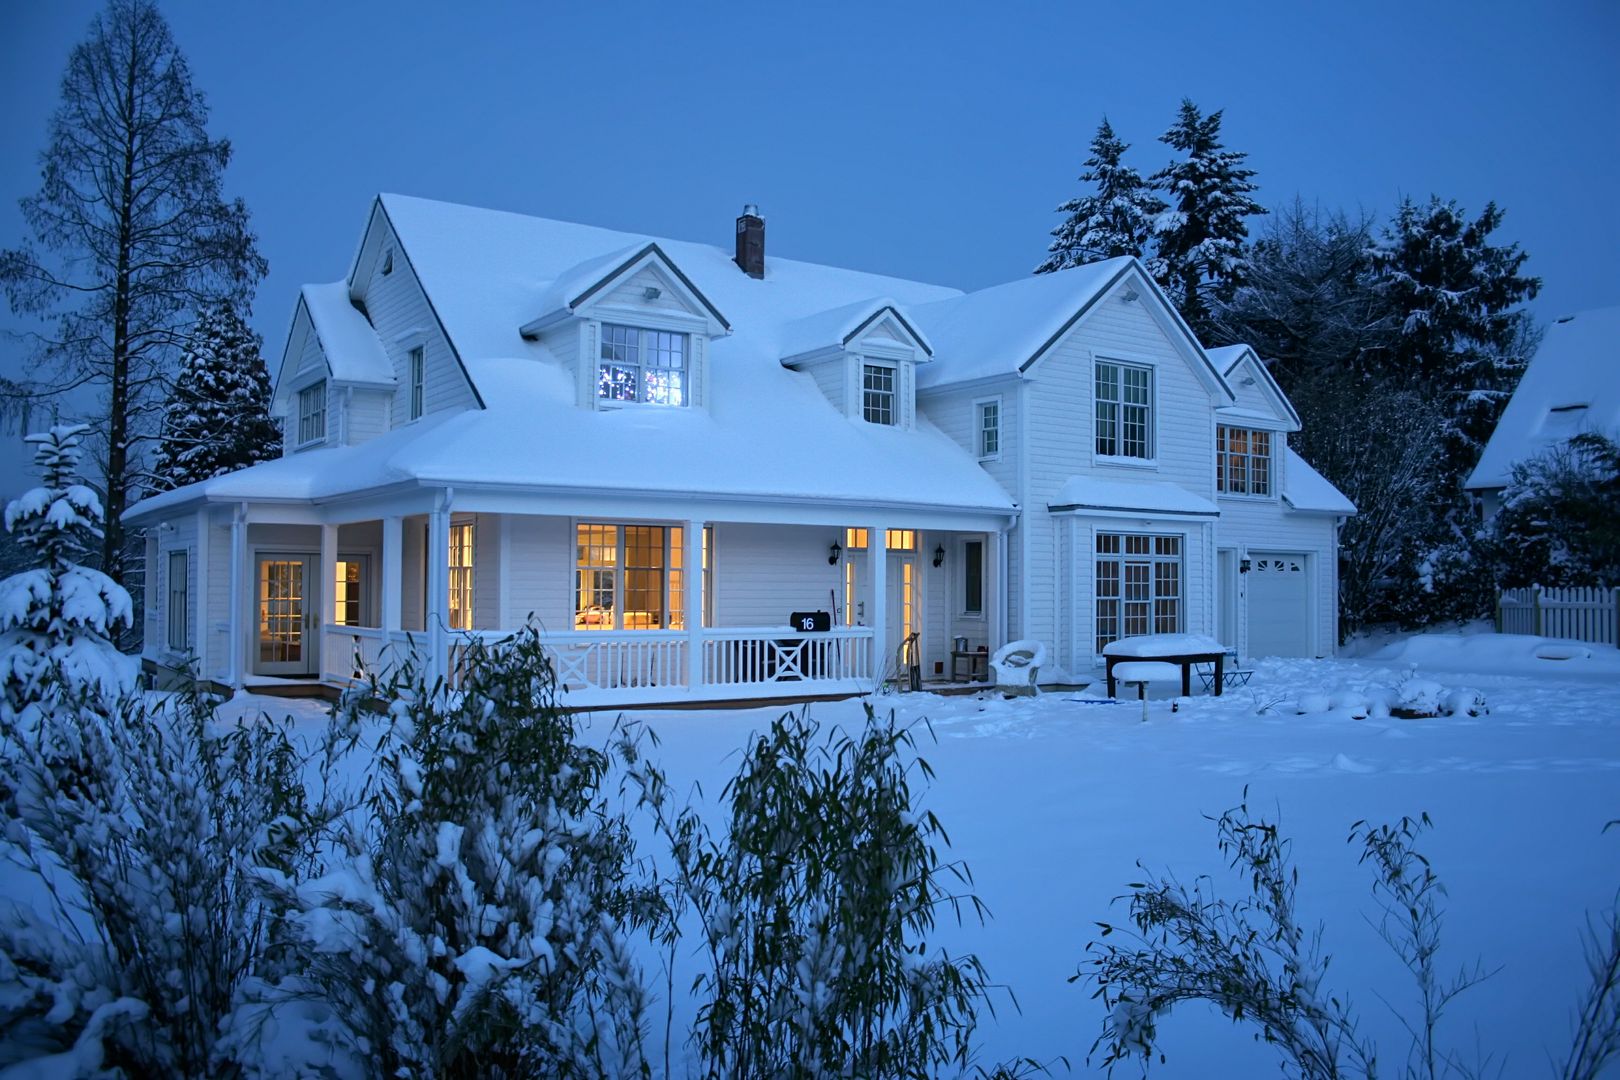 OPEN HOUSE front im Schnee THE WHITE HOUSE american dream homes gmbh Landhäuser Schnee,Himmel,Gebäude,Fenster,Pflanze,Haus,Baum,Vorrichtung,Hütte,Lärche